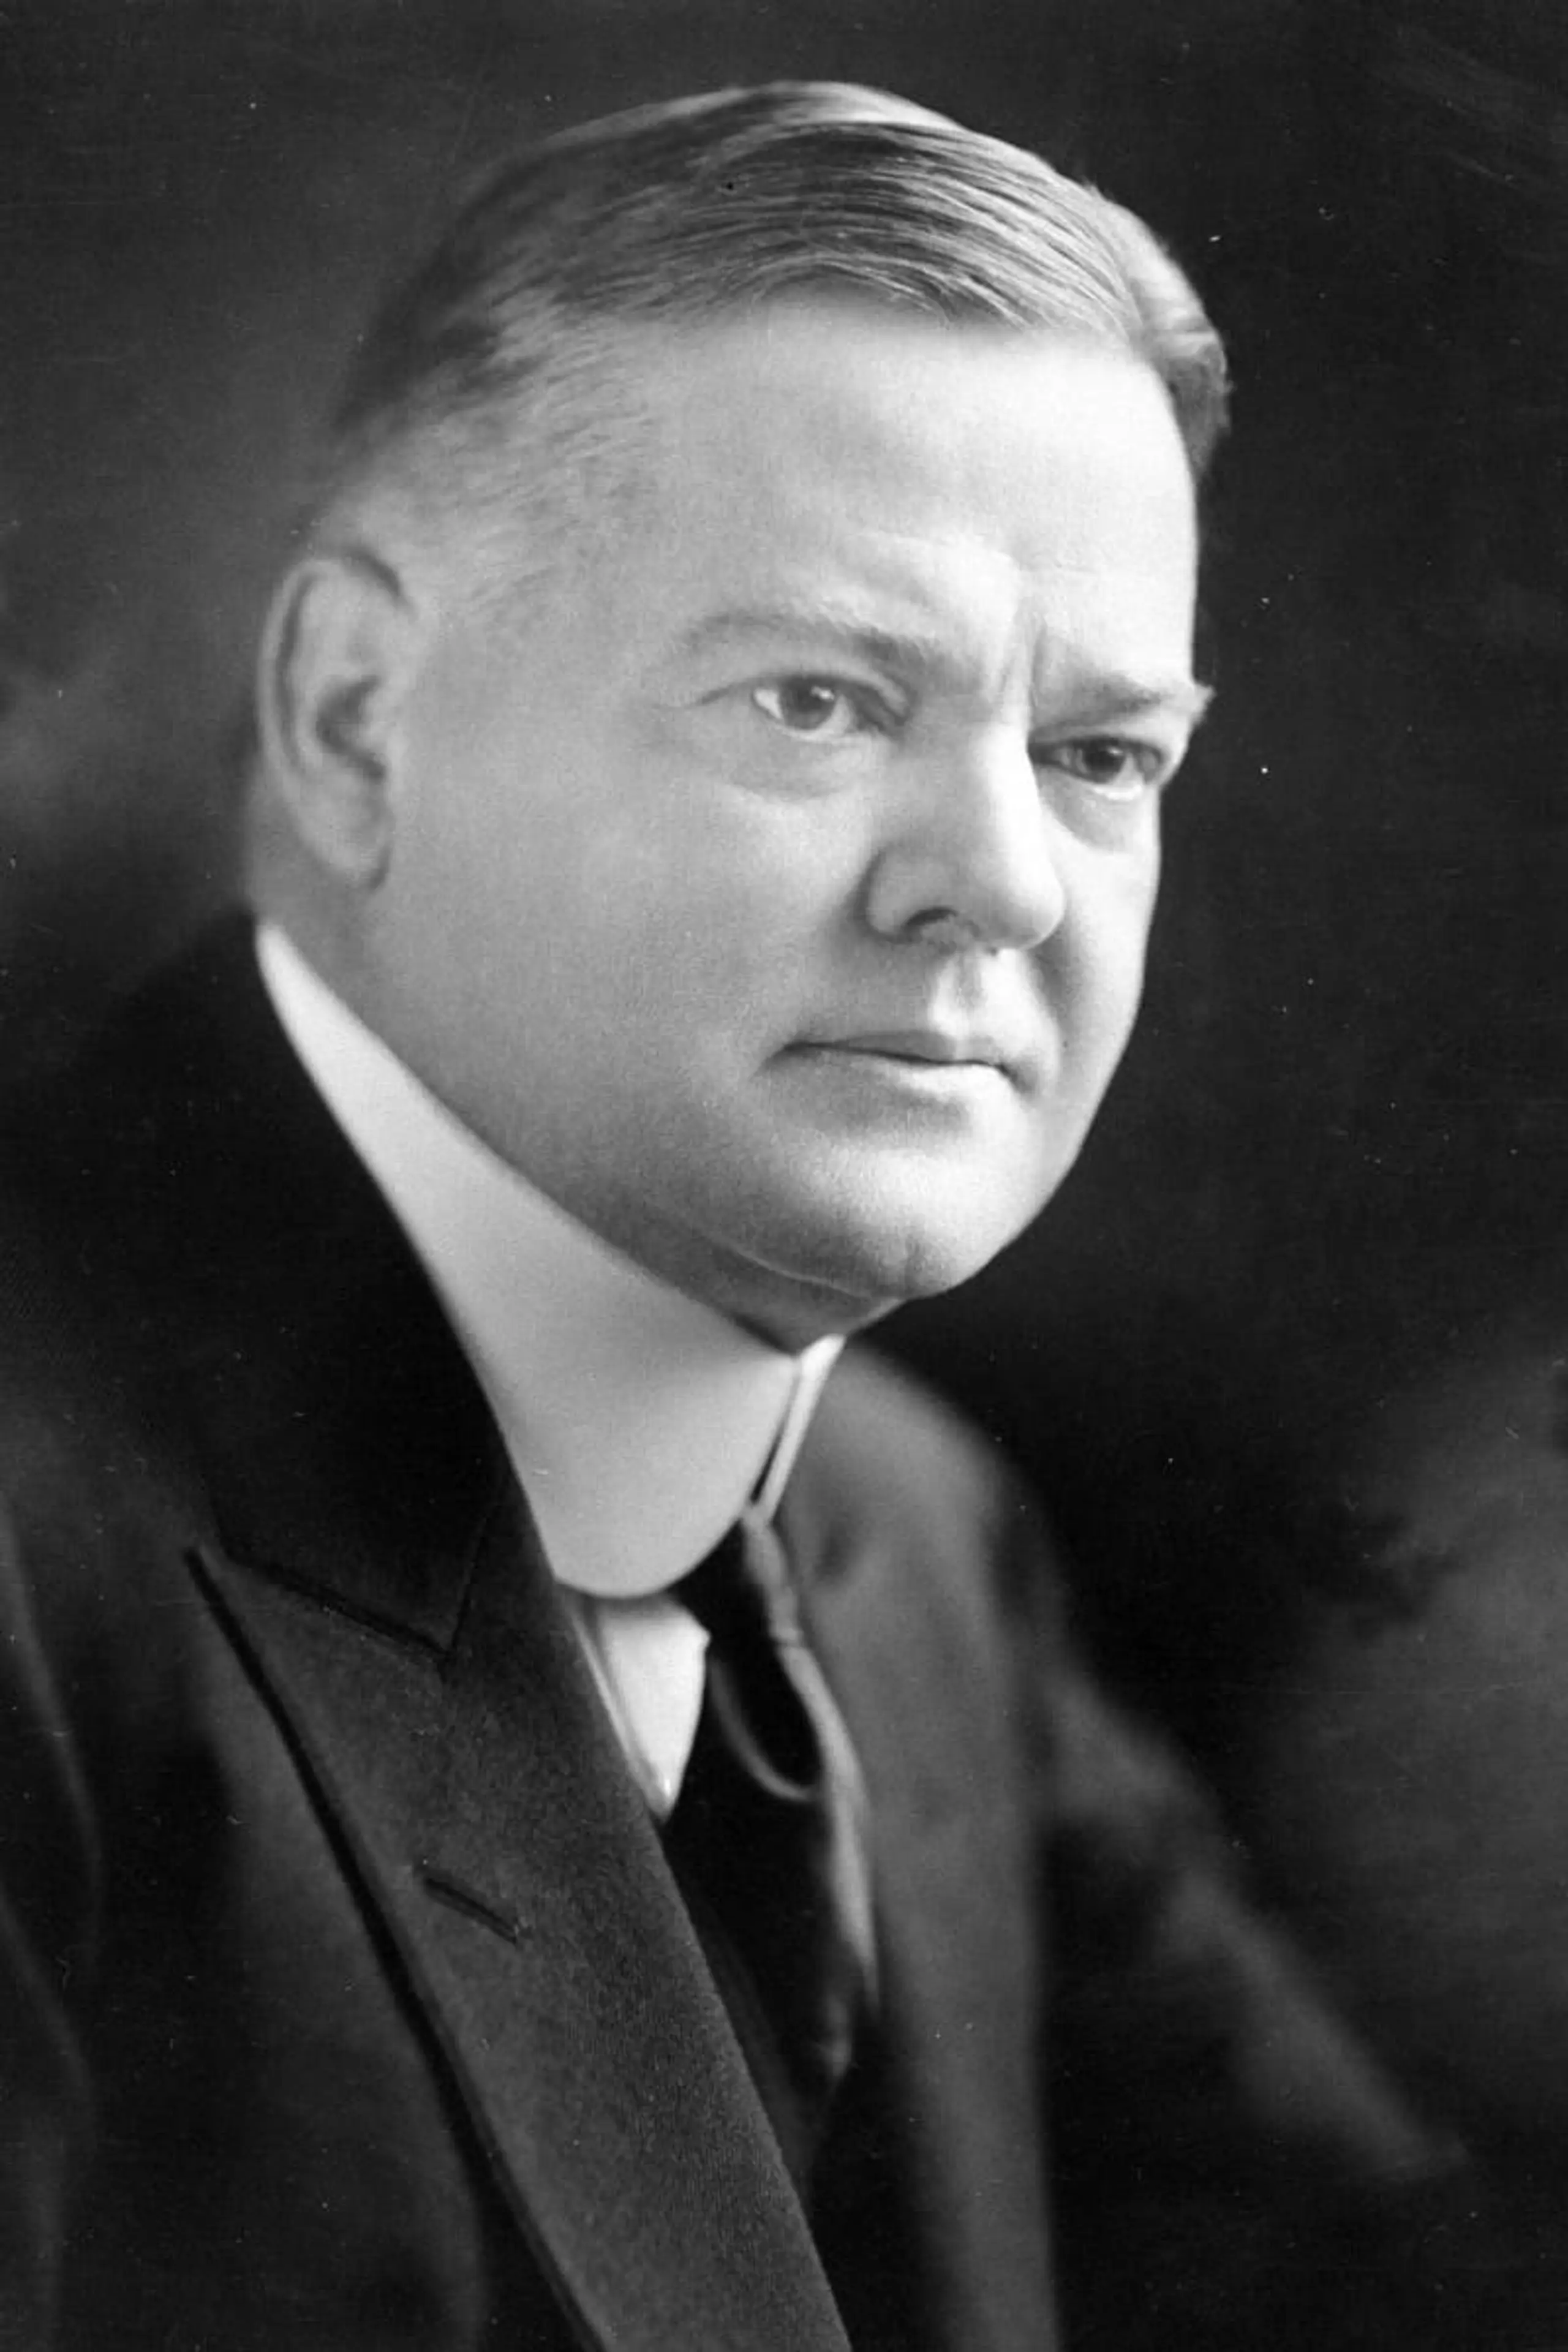 Foto von Herbert Hoover